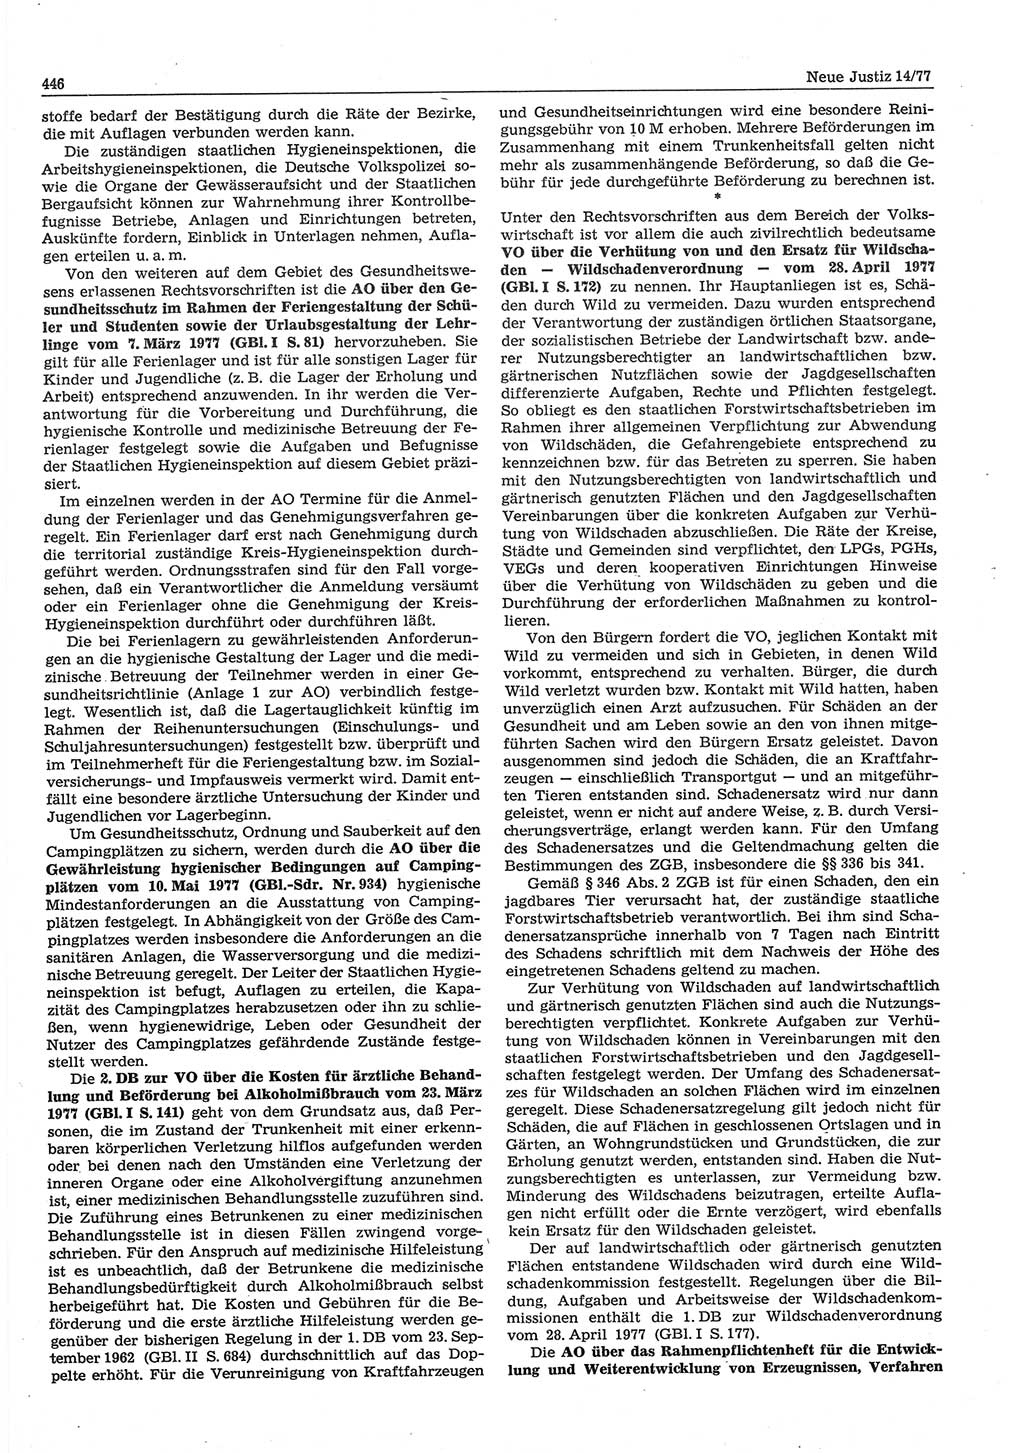 Neue Justiz (NJ), Zeitschrift für Recht und Rechtswissenschaft-Zeitschrift, sozialistisches Recht und Gesetzlichkeit, 31. Jahrgang 1977, Seite 446 (NJ DDR 1977, S. 446)